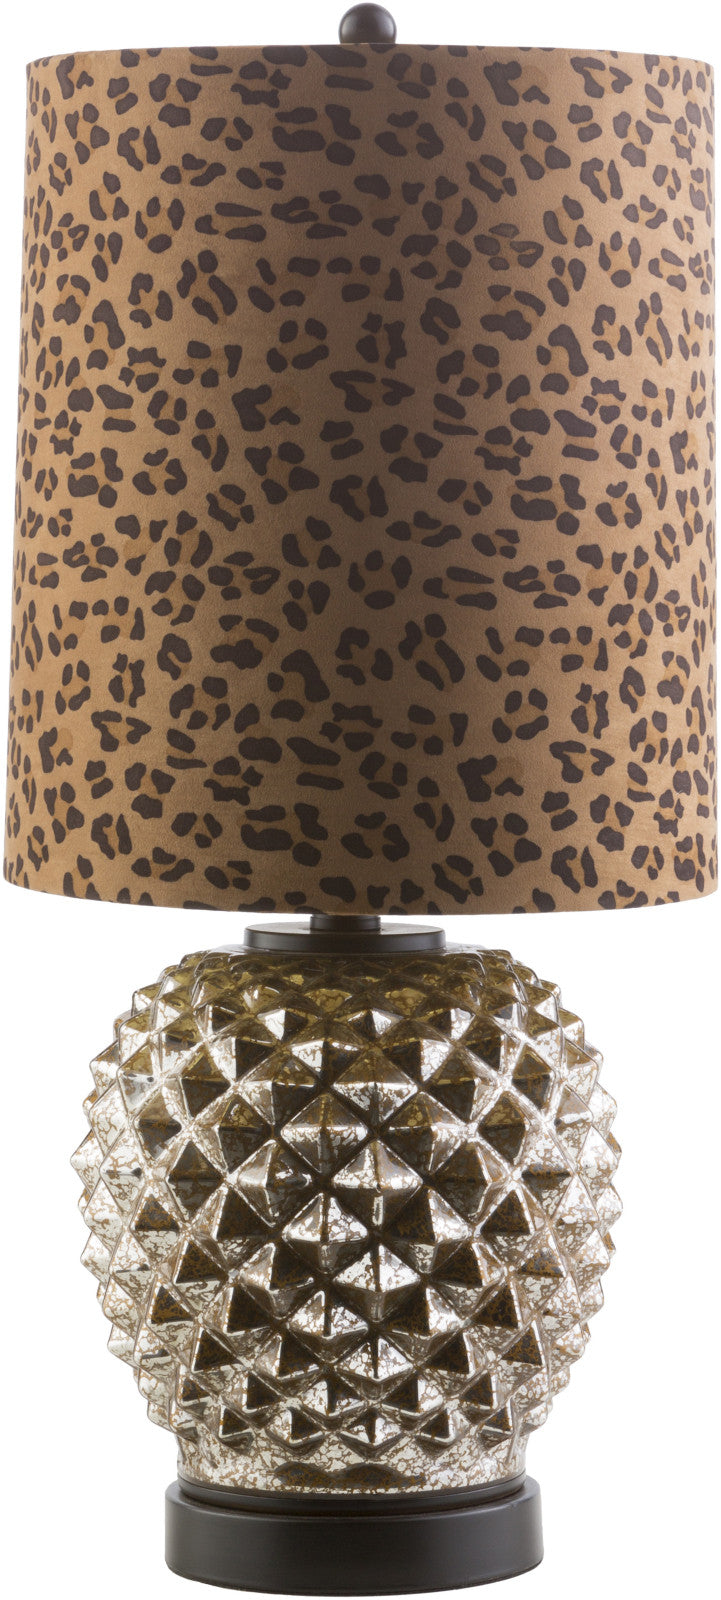 Surya Jezebel JZB-910 Leopard Lamp Table Lamp